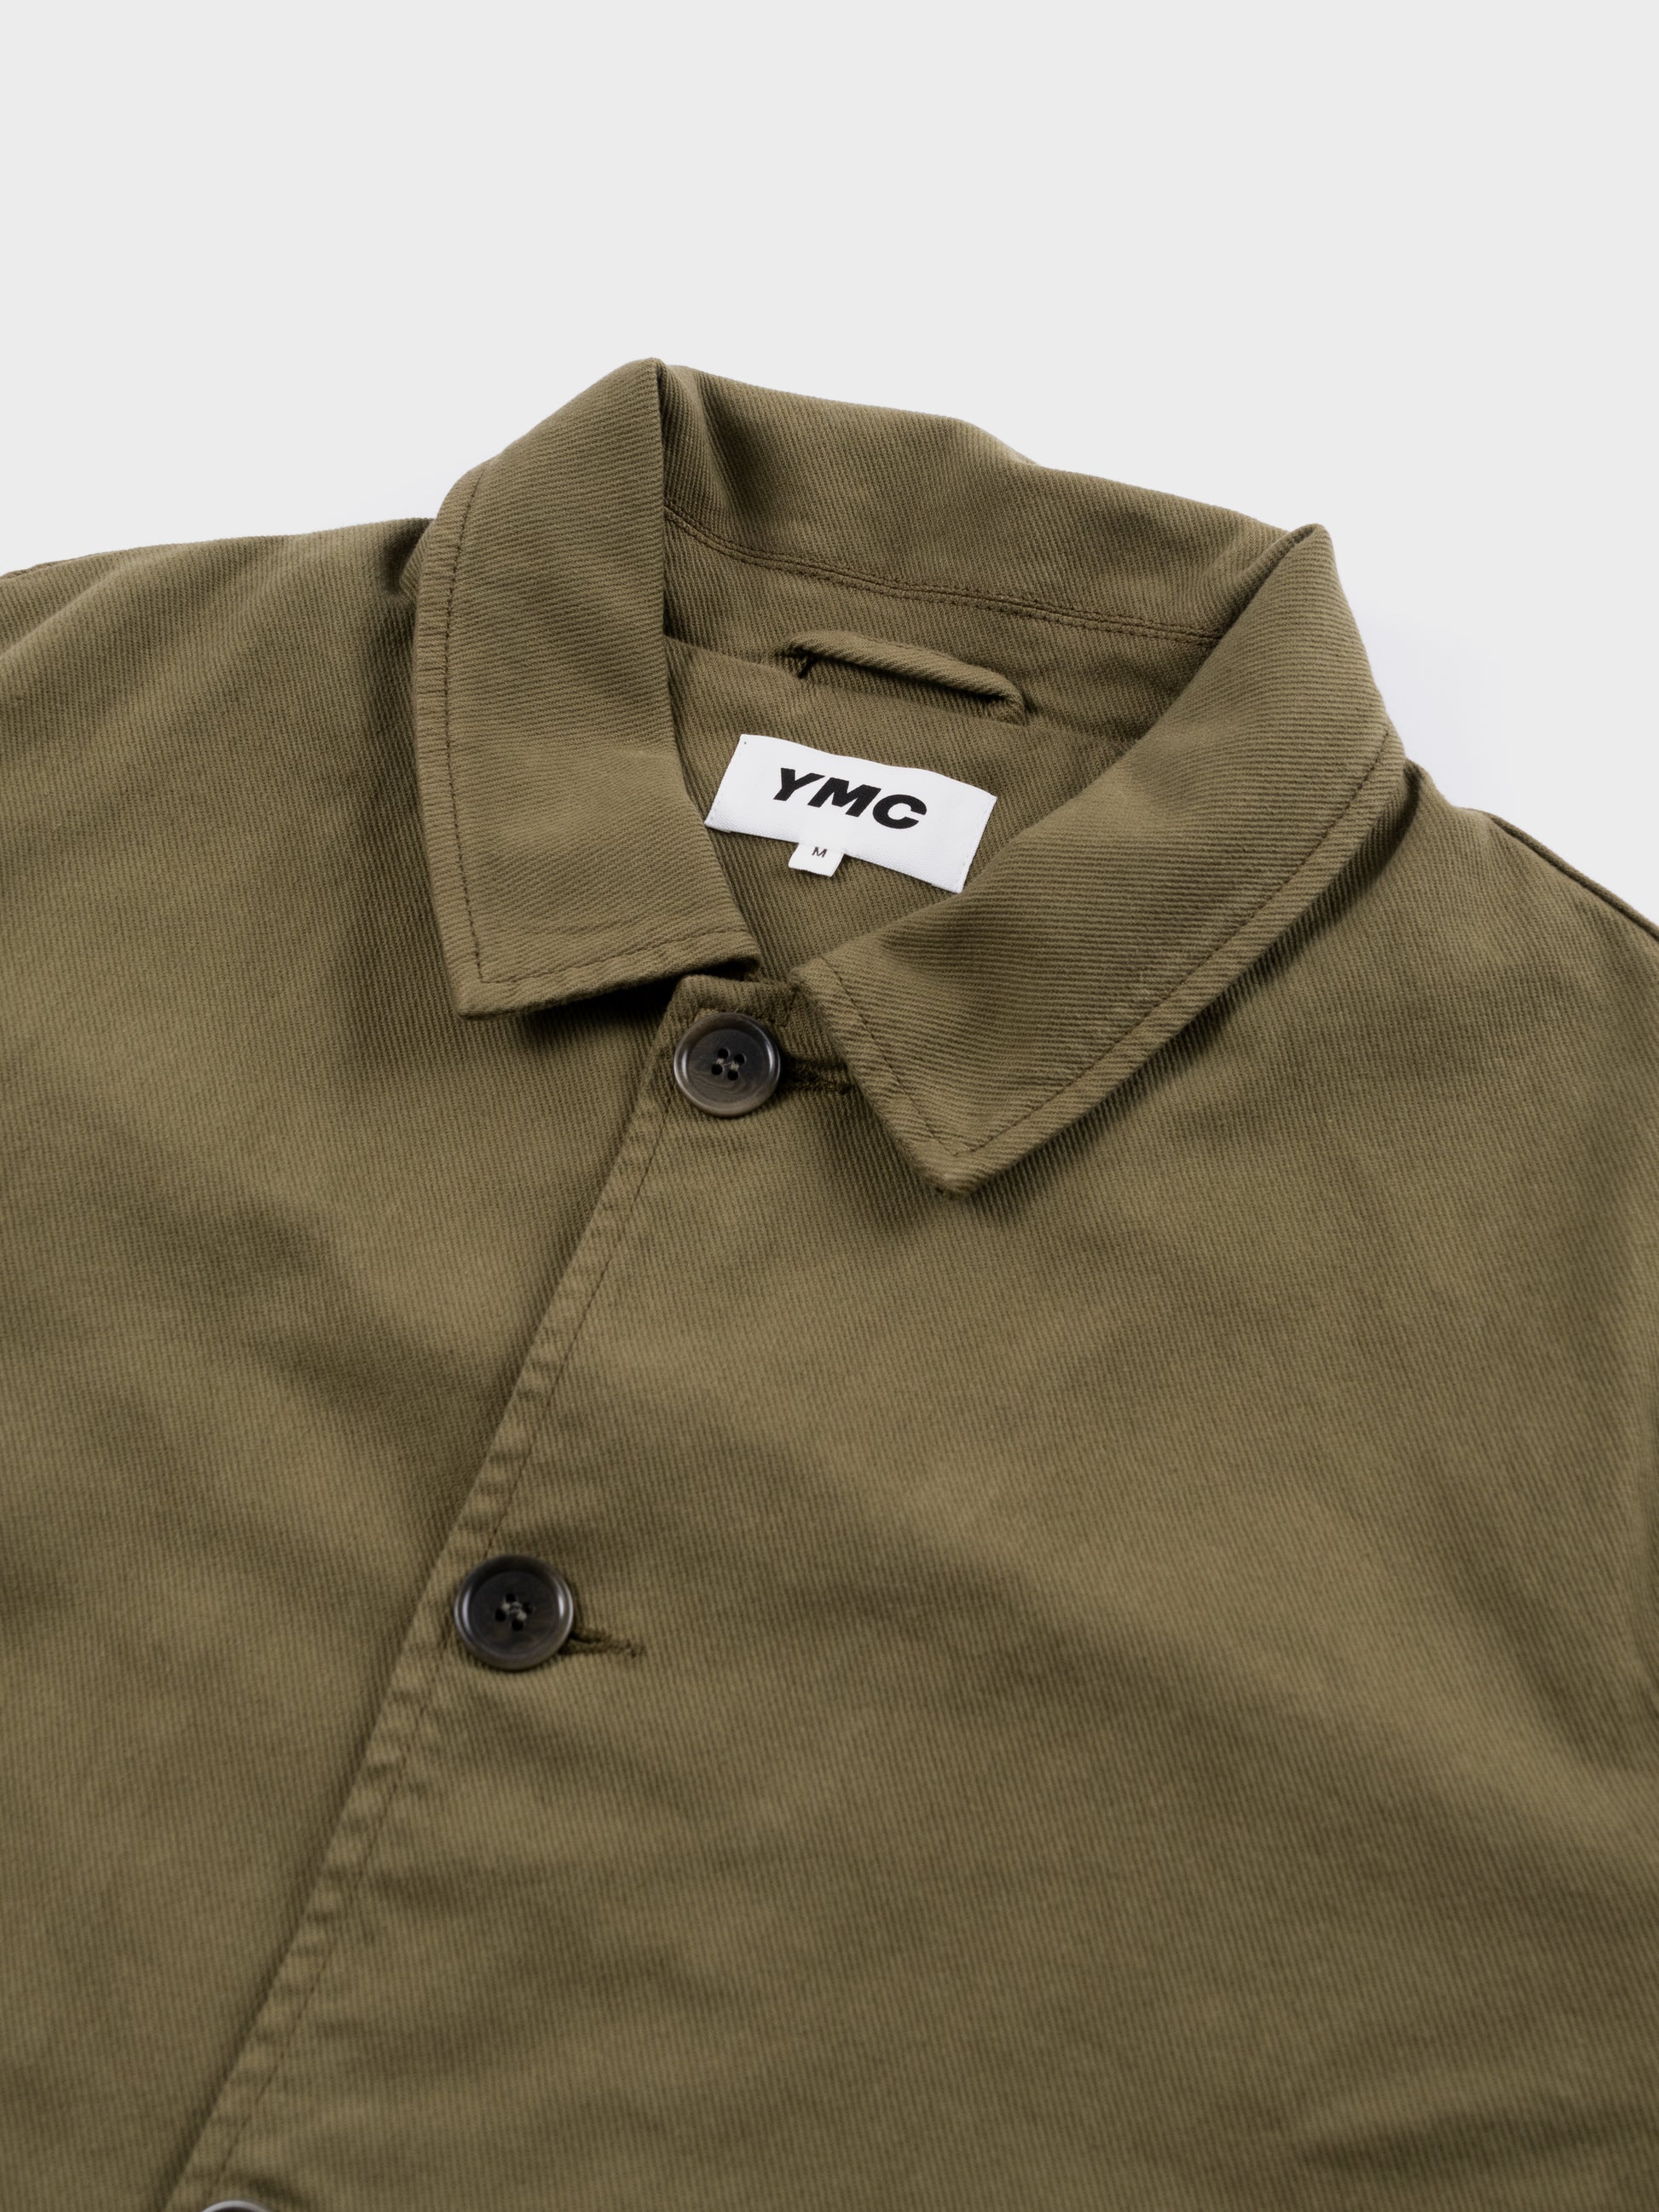 YMC Groundhog Jacket - Olive